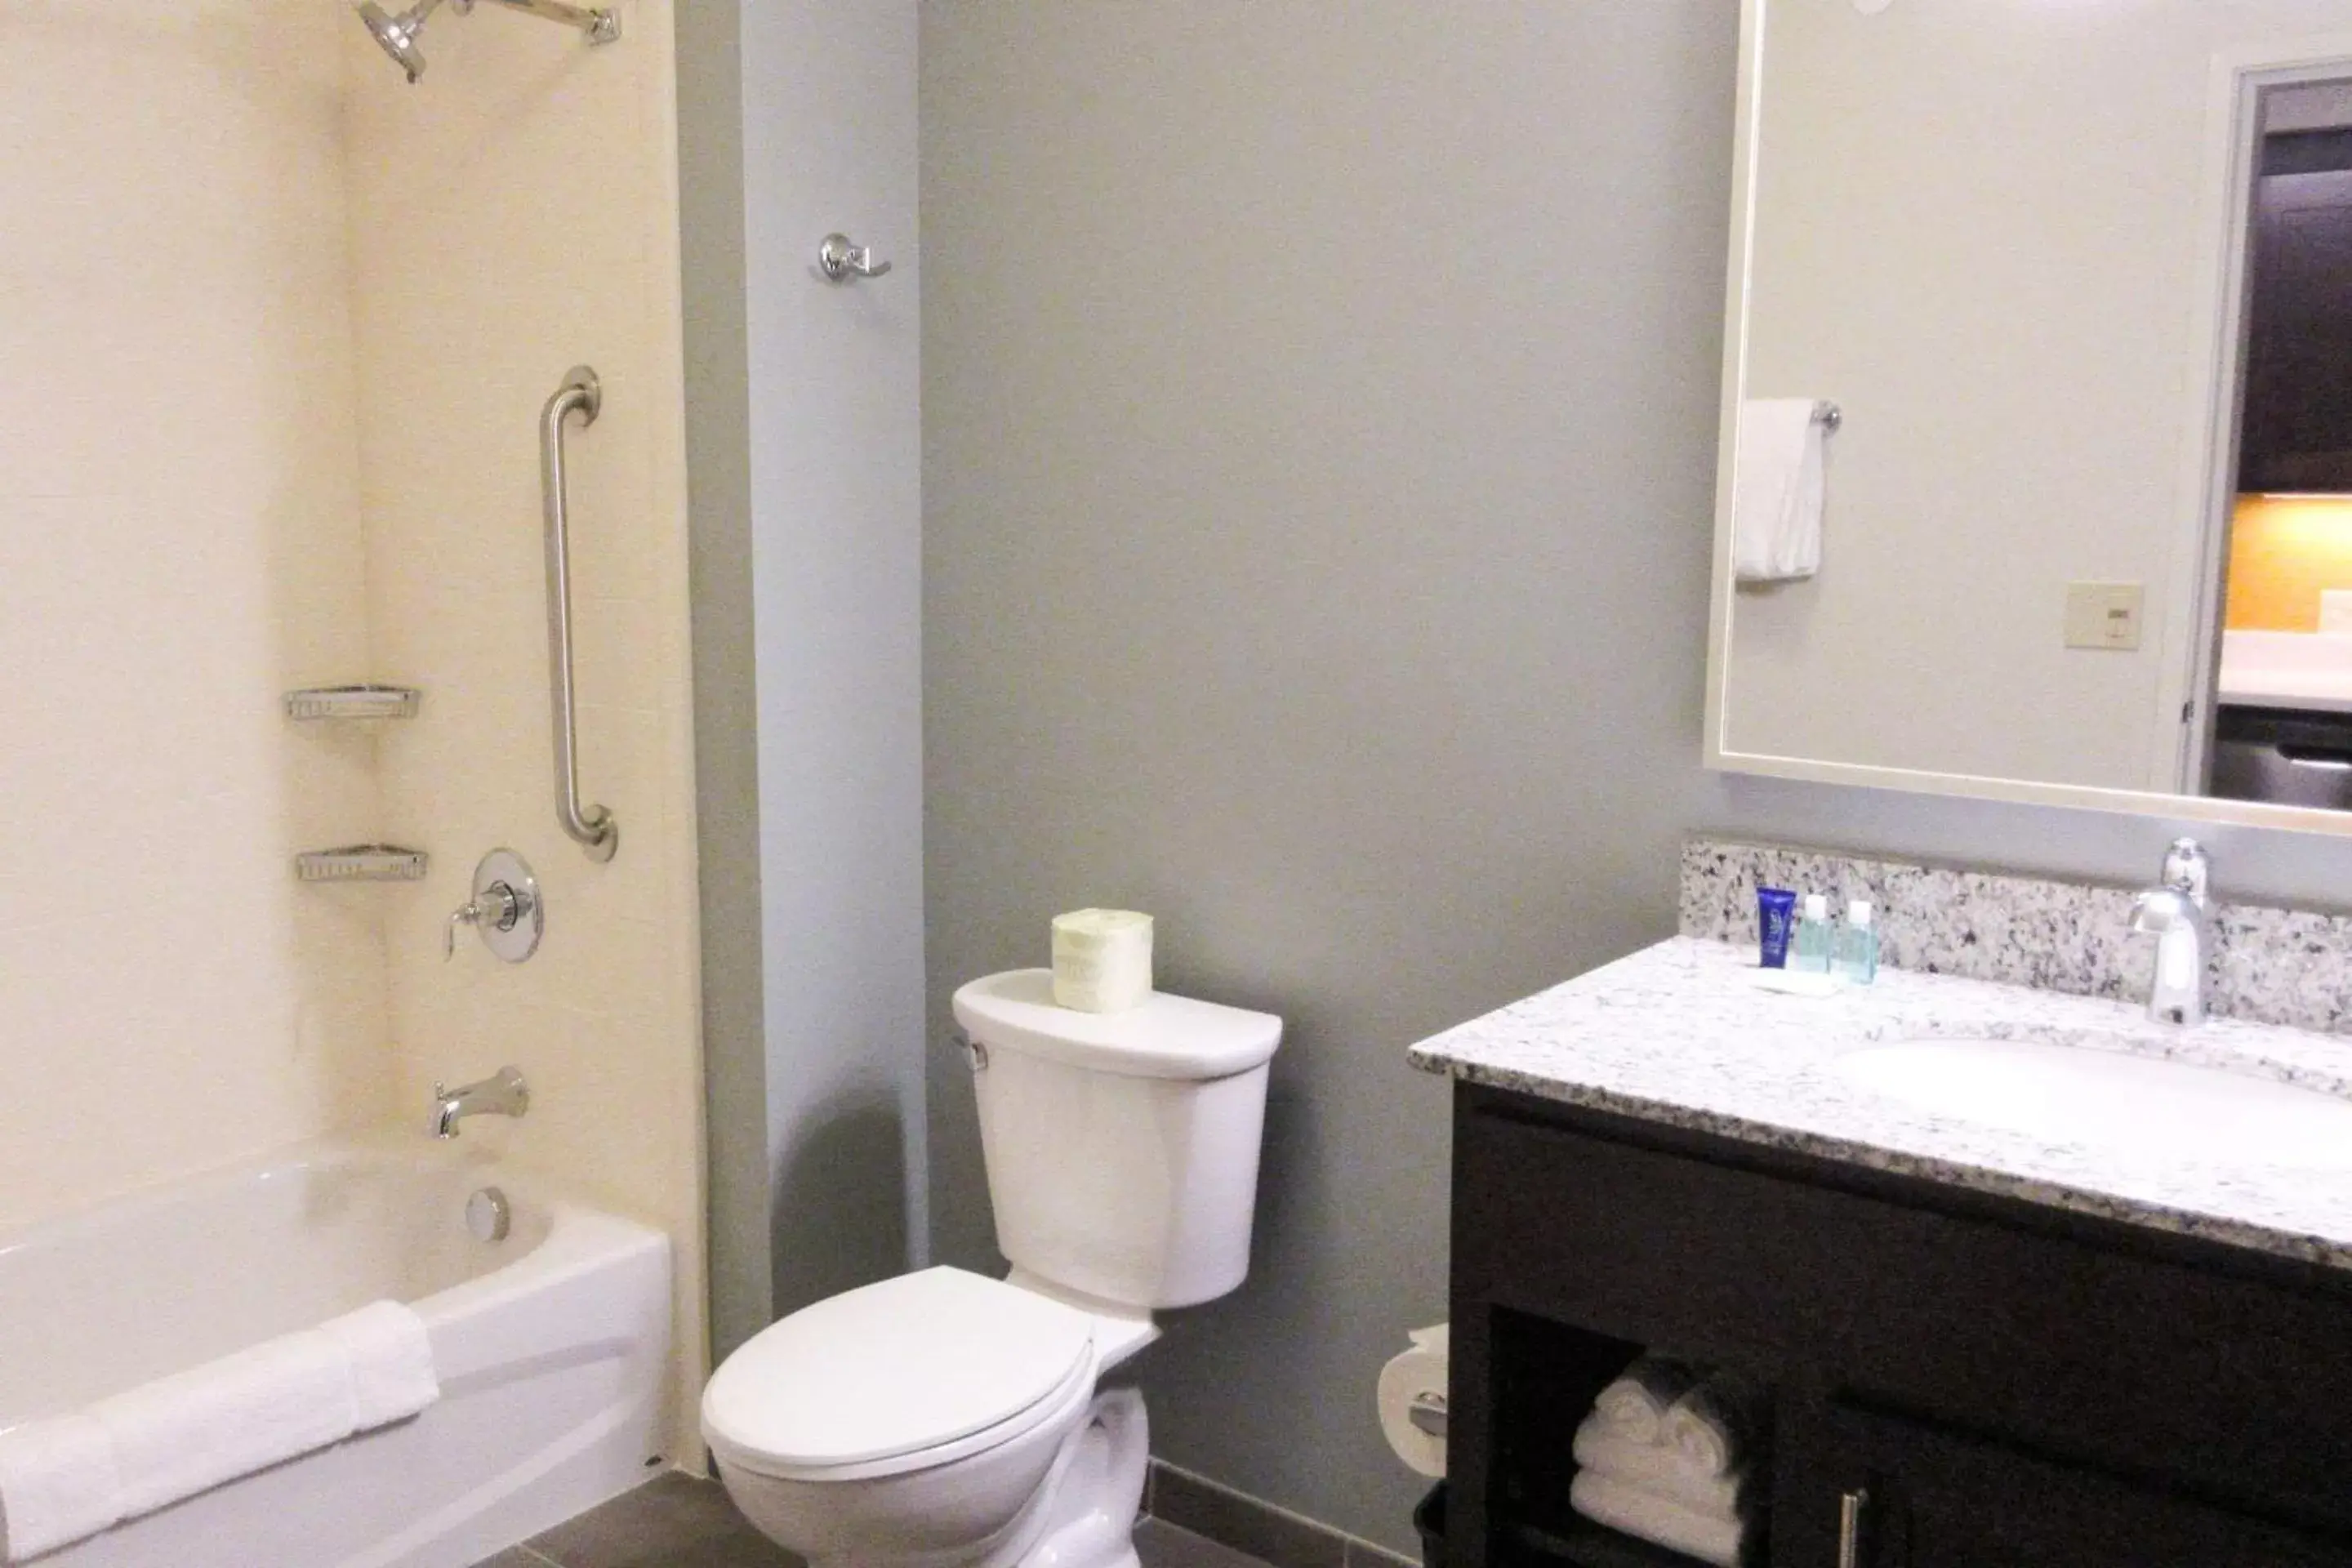 Bathroom in MainStay Suites Spokane Airport